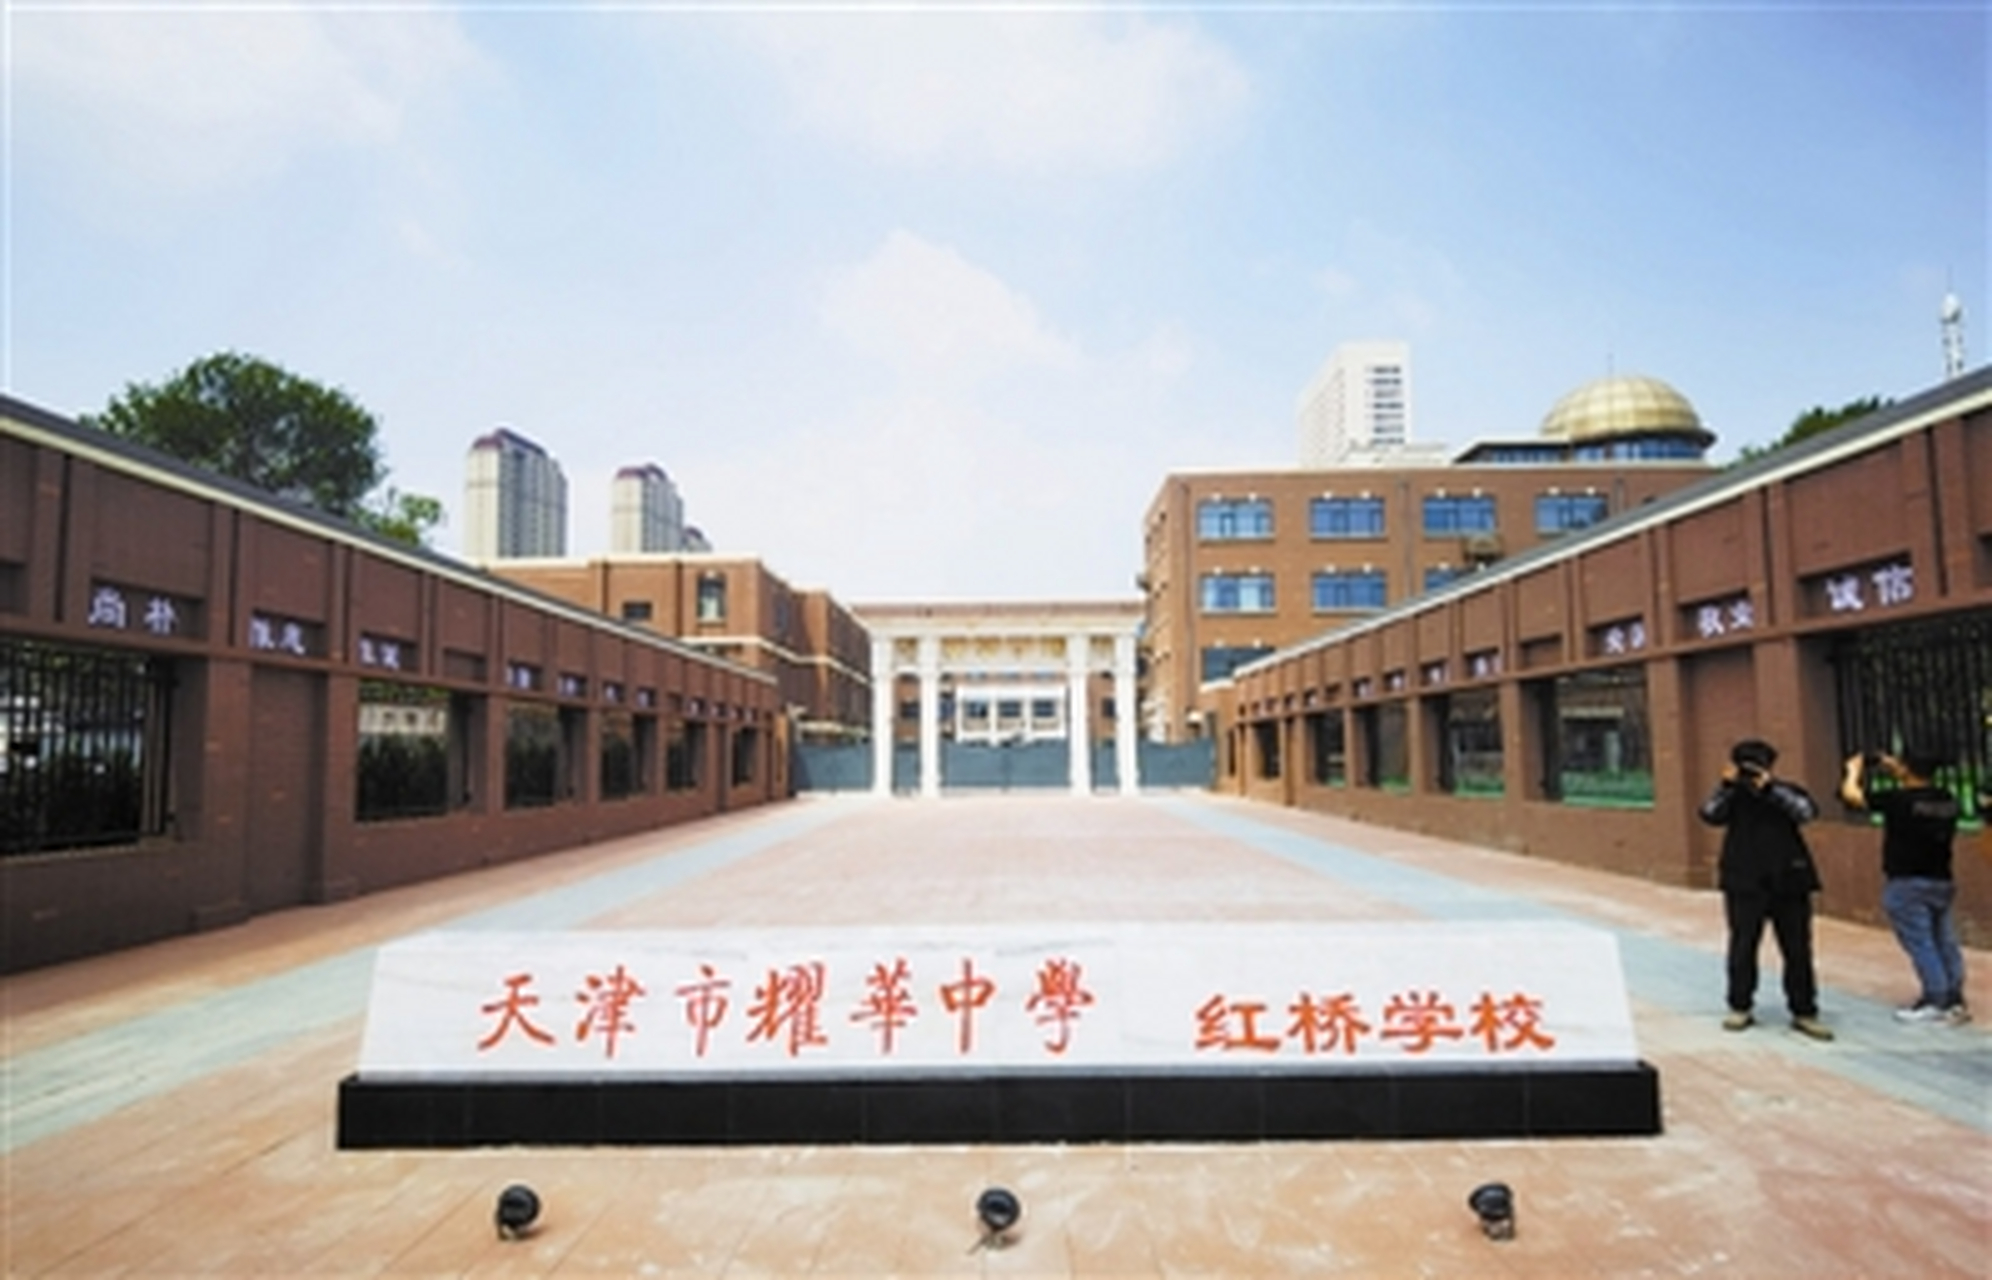 天津耀华中学红桥学校通过竣工验收  从人民医院地铁站a口出站,在红旗